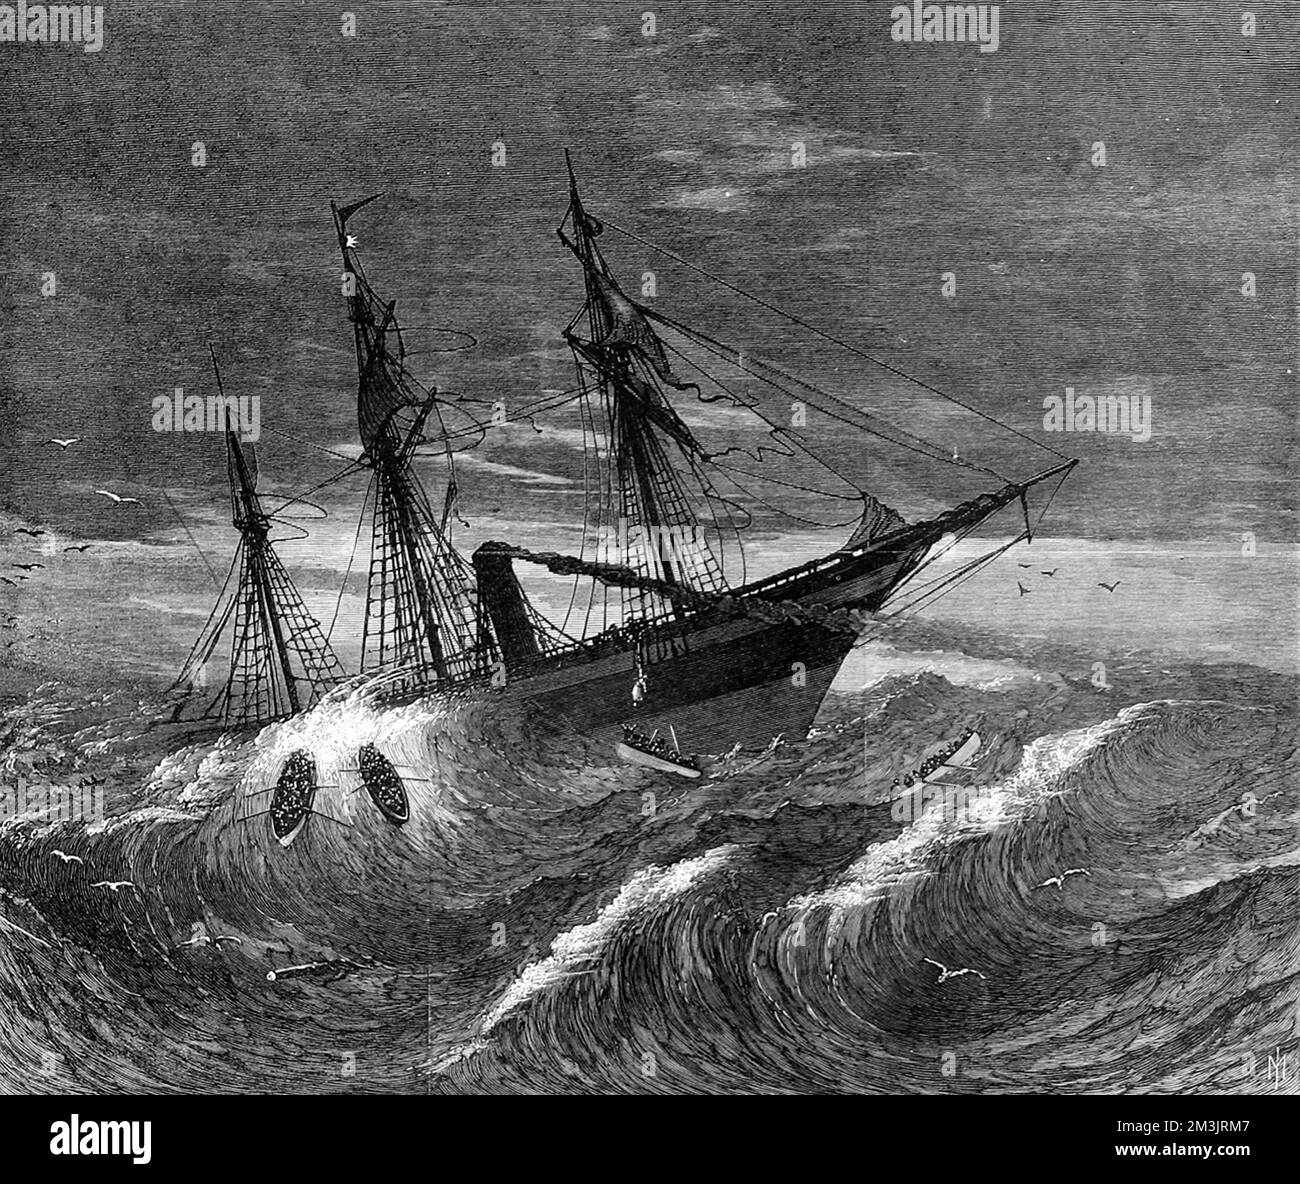 Das Emigrationsschiff, die Hibernia, treibt vor der irischen Küste. Das Bild stammt von einer Skizze von Mr. John C. Forbes, einem der Überlebenden, und zeigt die Rettungsboote, die in stürmischen Gewässern kämpfen. Siebzig Tote starben bei einem Sturm durch einen Unfall mit der Gelenkwelle. Datum: 1868 Stockfoto